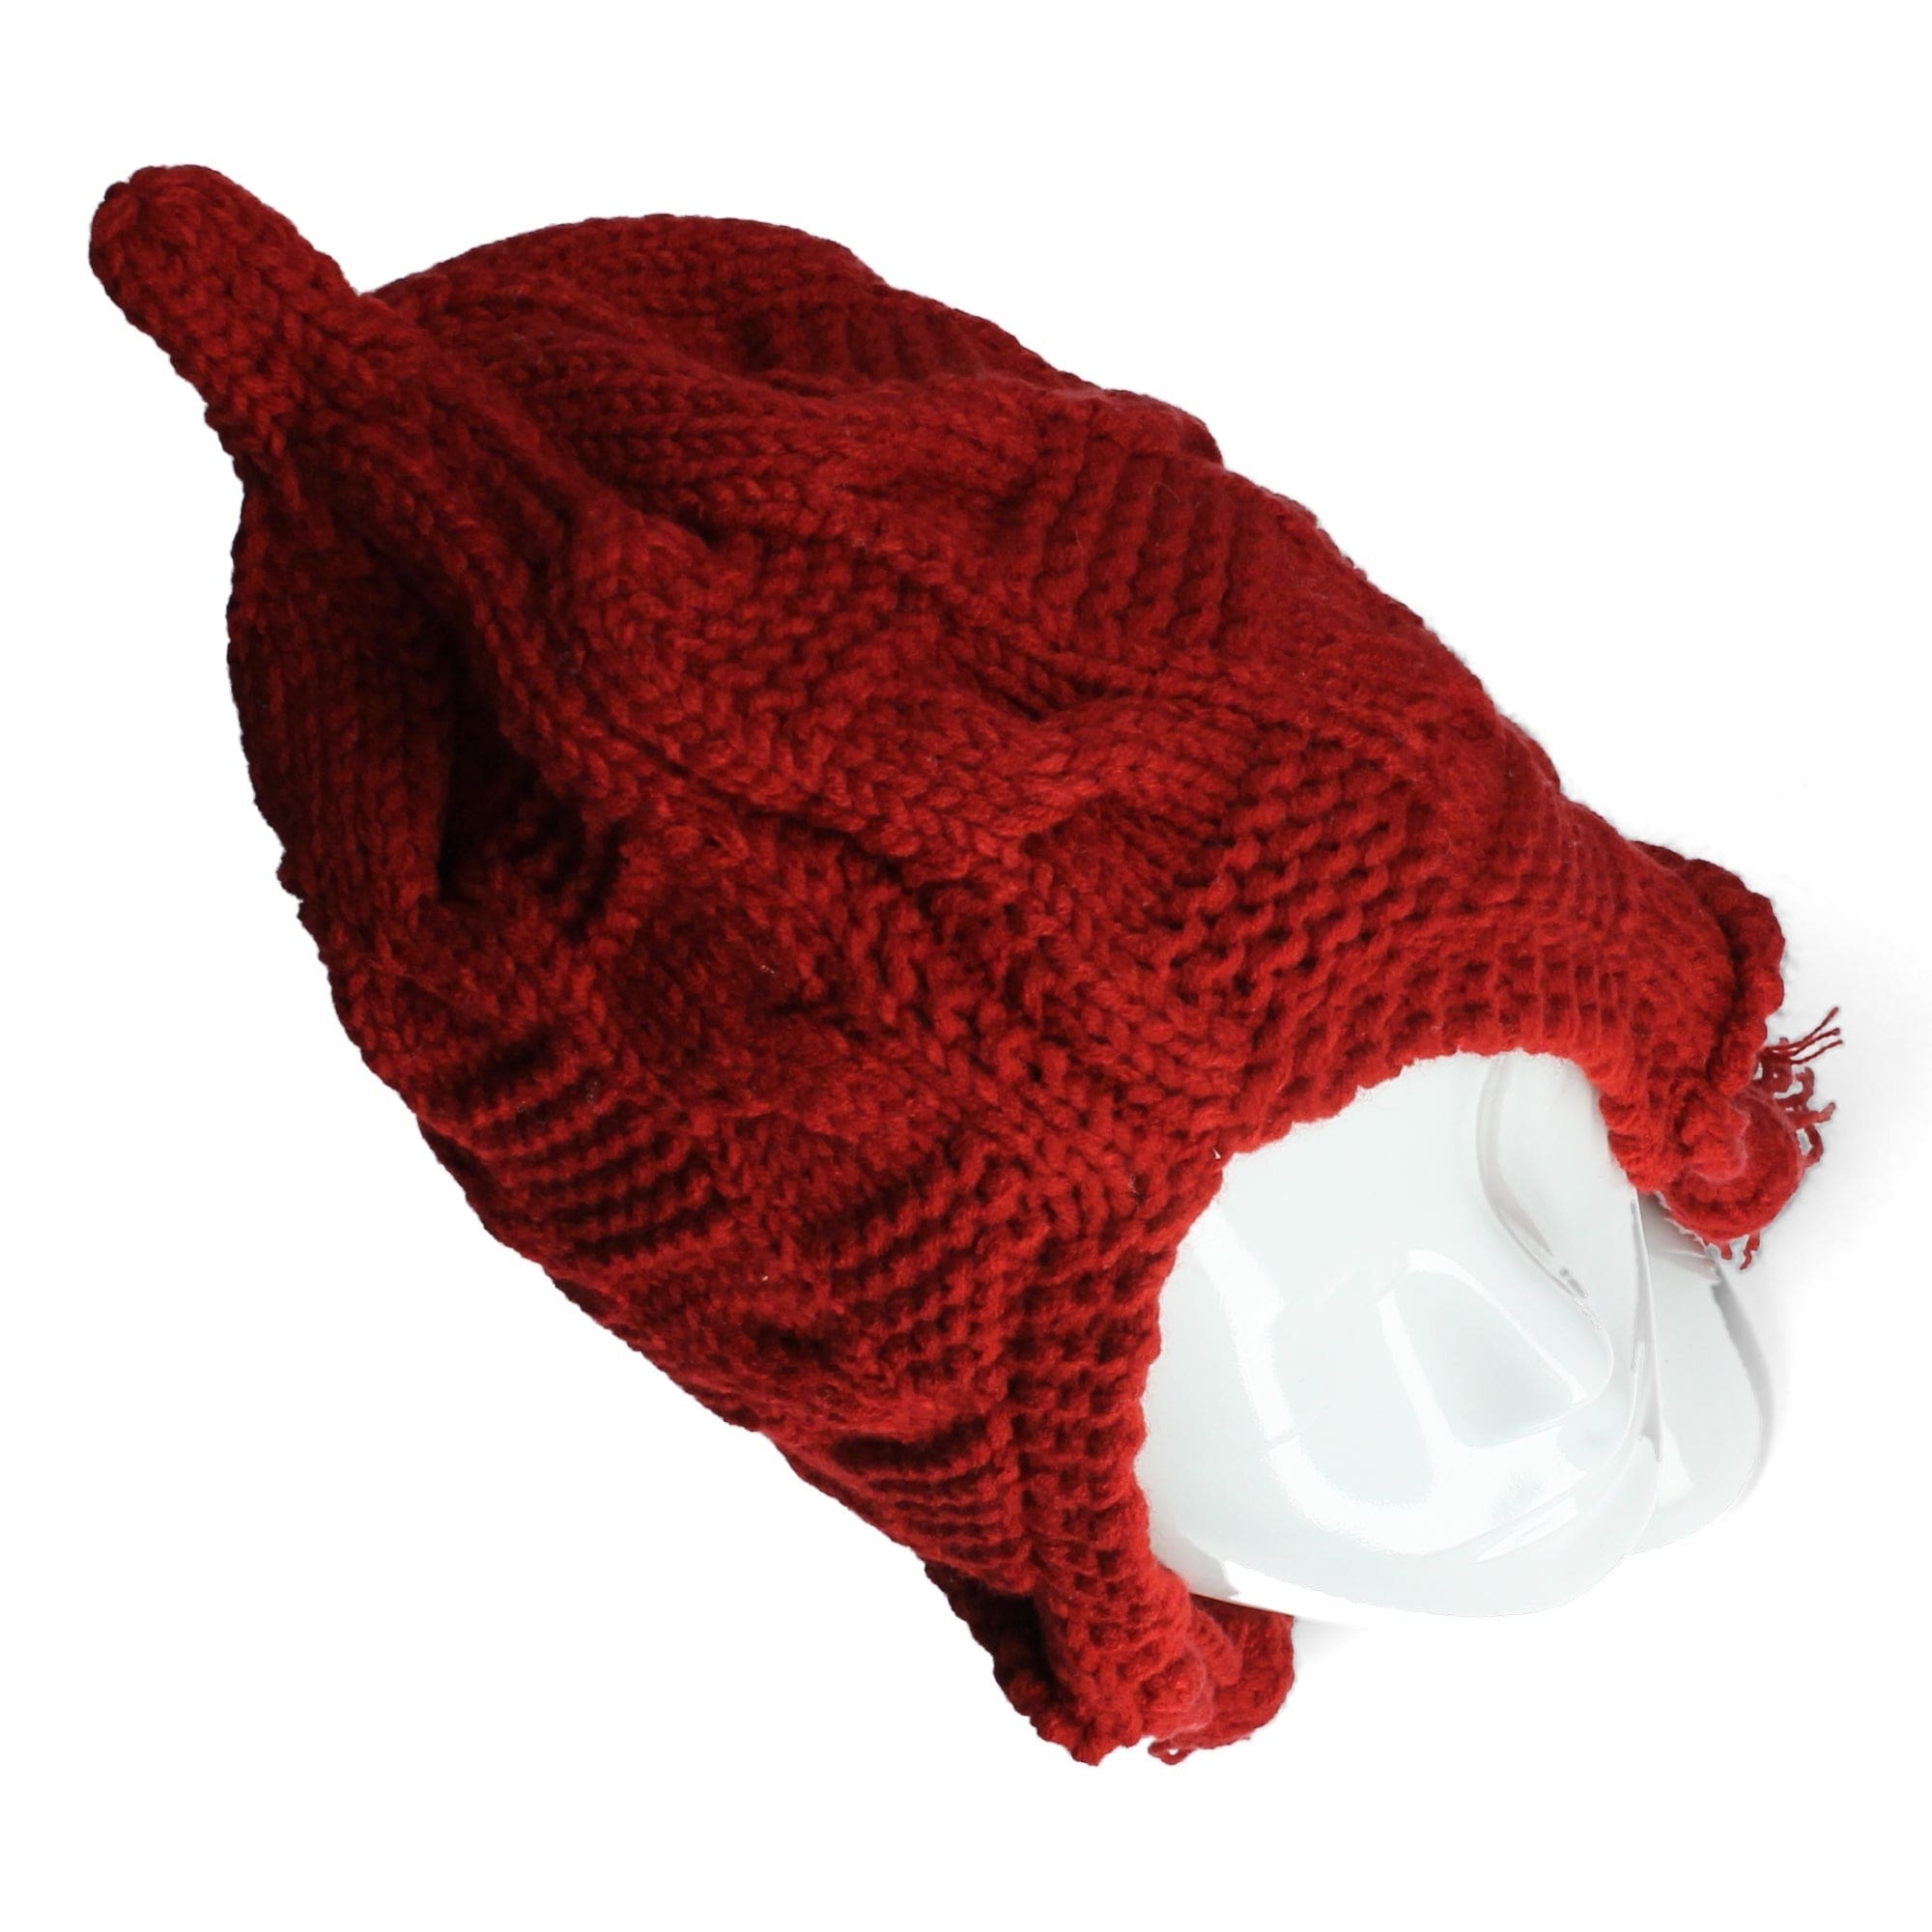 Ethnische Mütze aus rotem Strick - Hüte